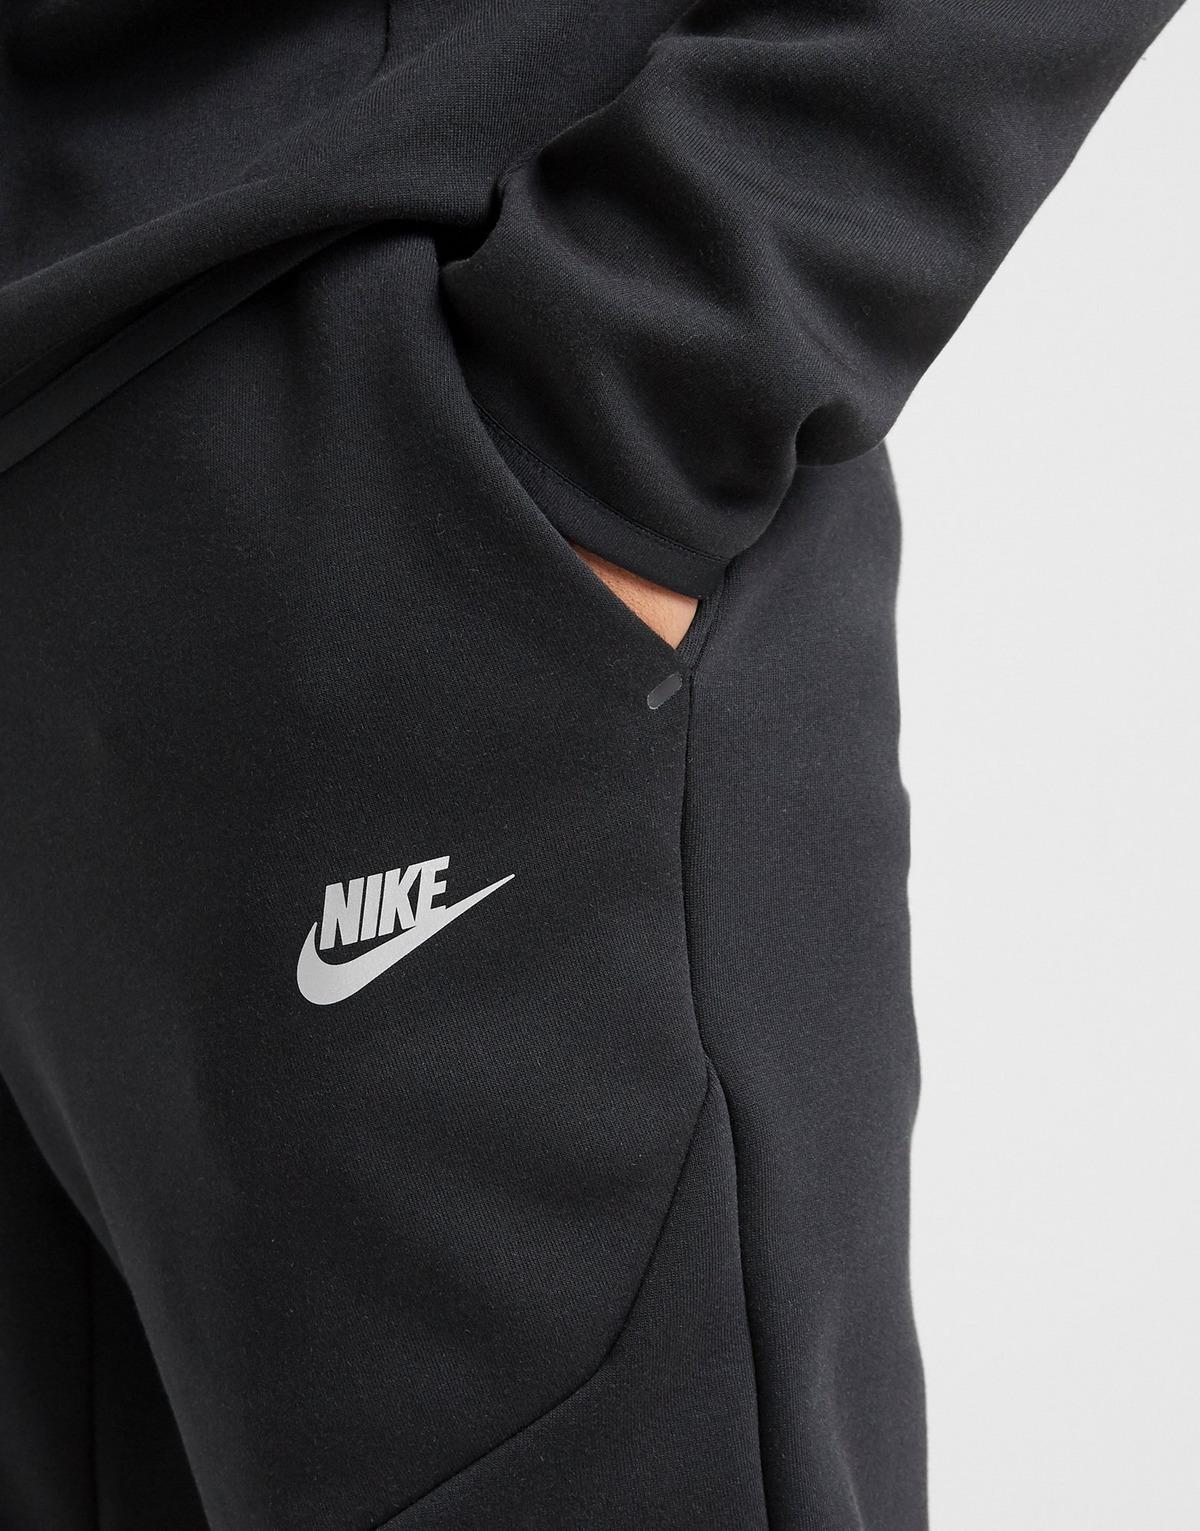 Nike Tech Fleece Joggers in Black for Men - Lyst